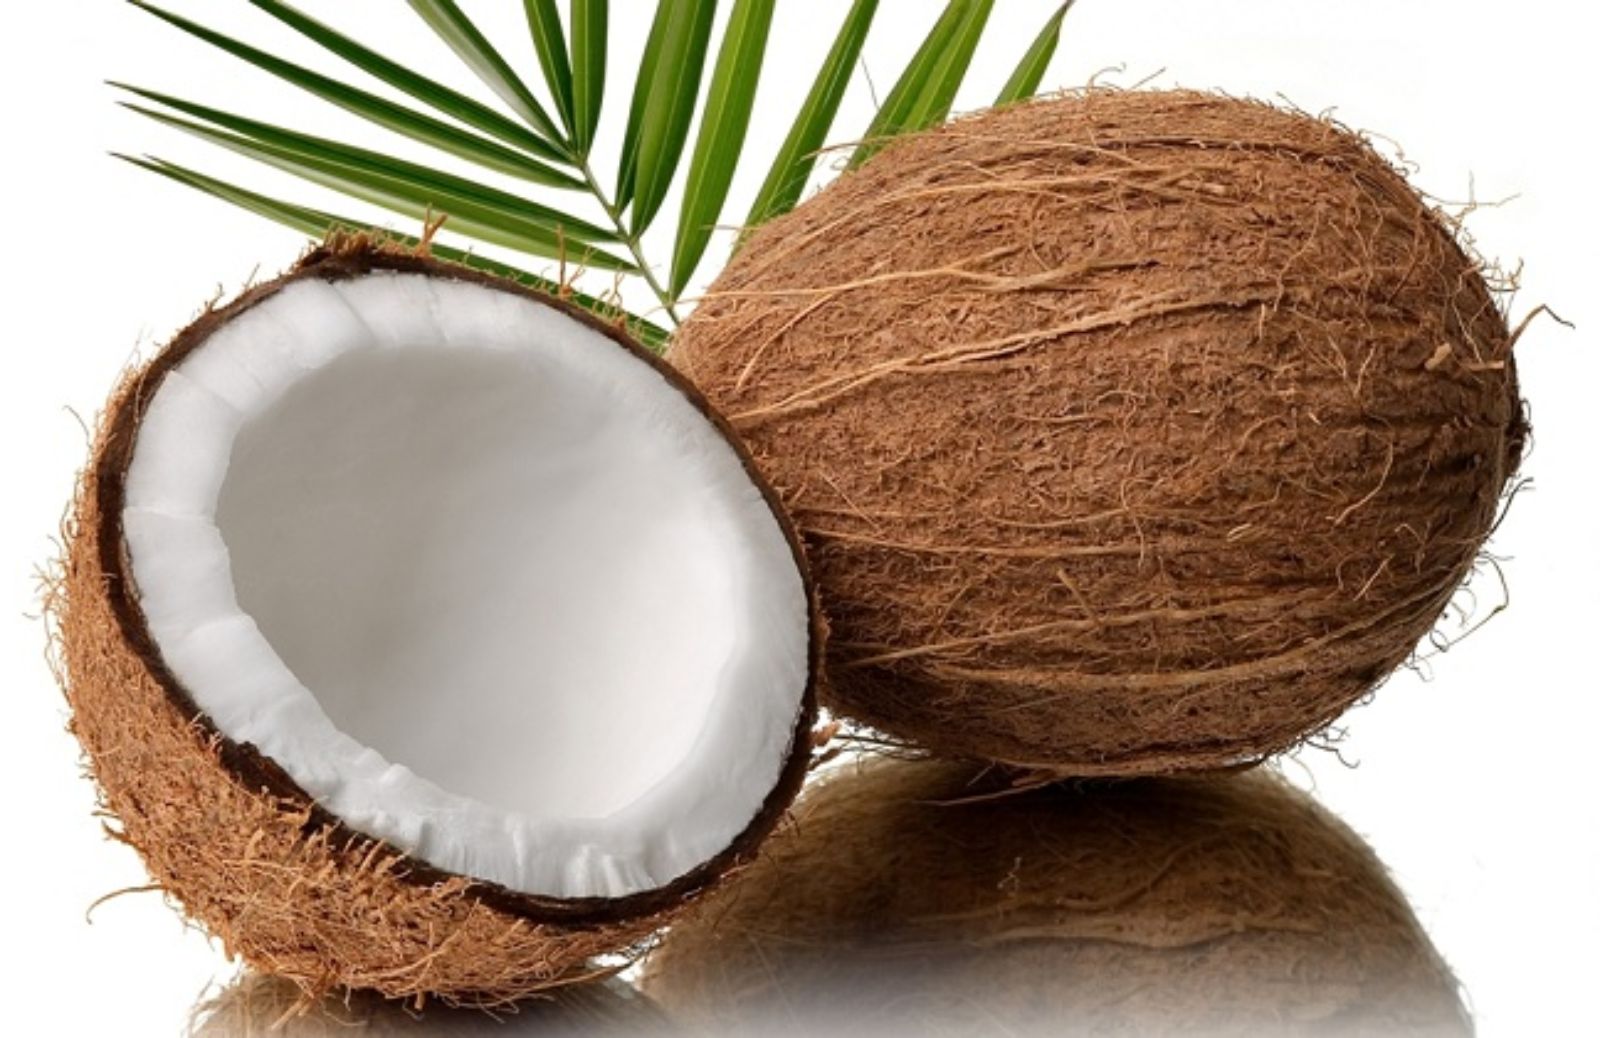 Case antisismiche che si ispirano alle noci di cocco